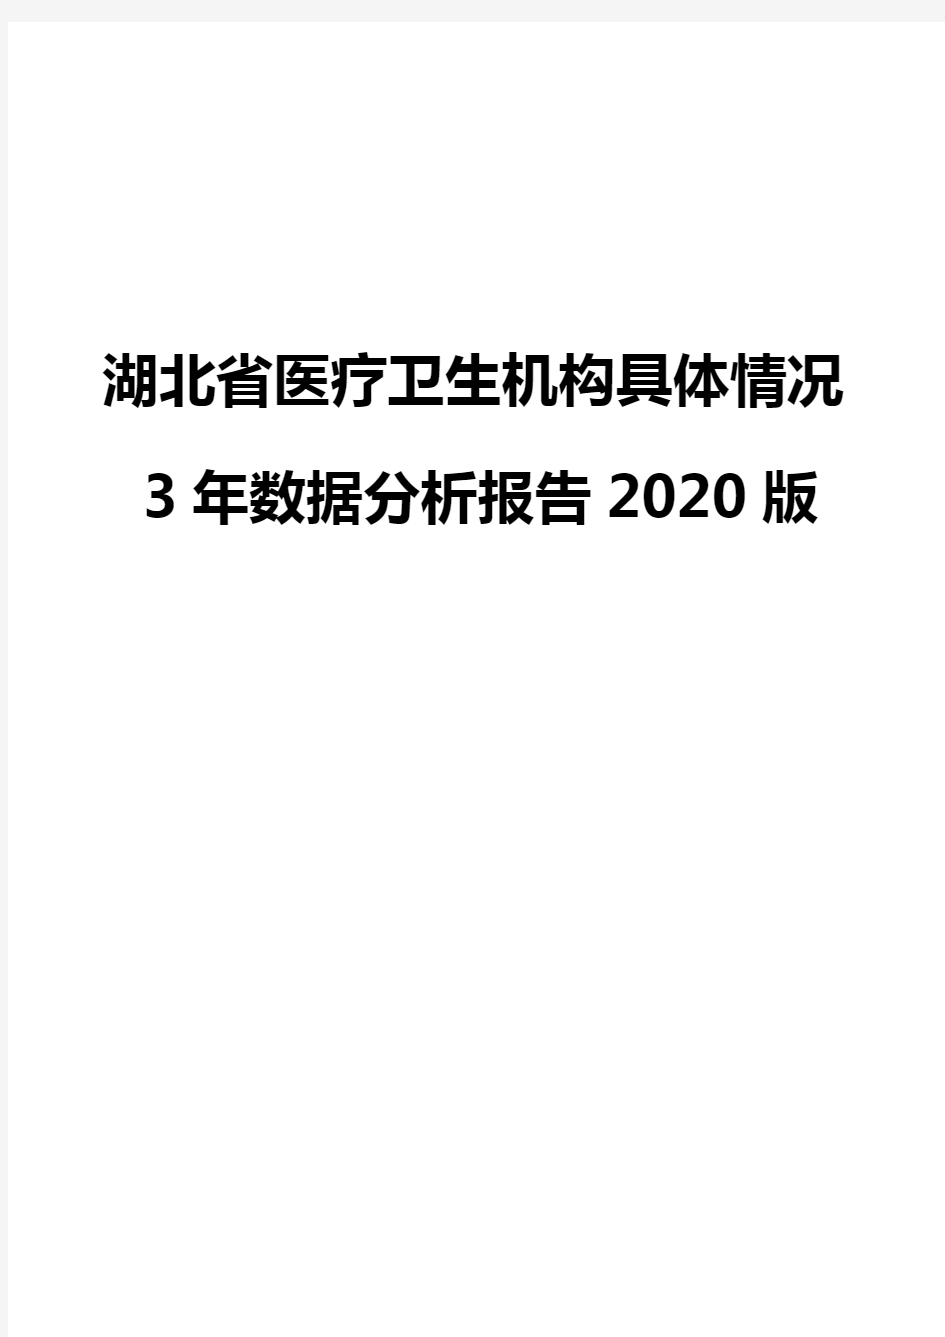 湖北省医疗卫生机构具体情况3年数据分析报告2020版